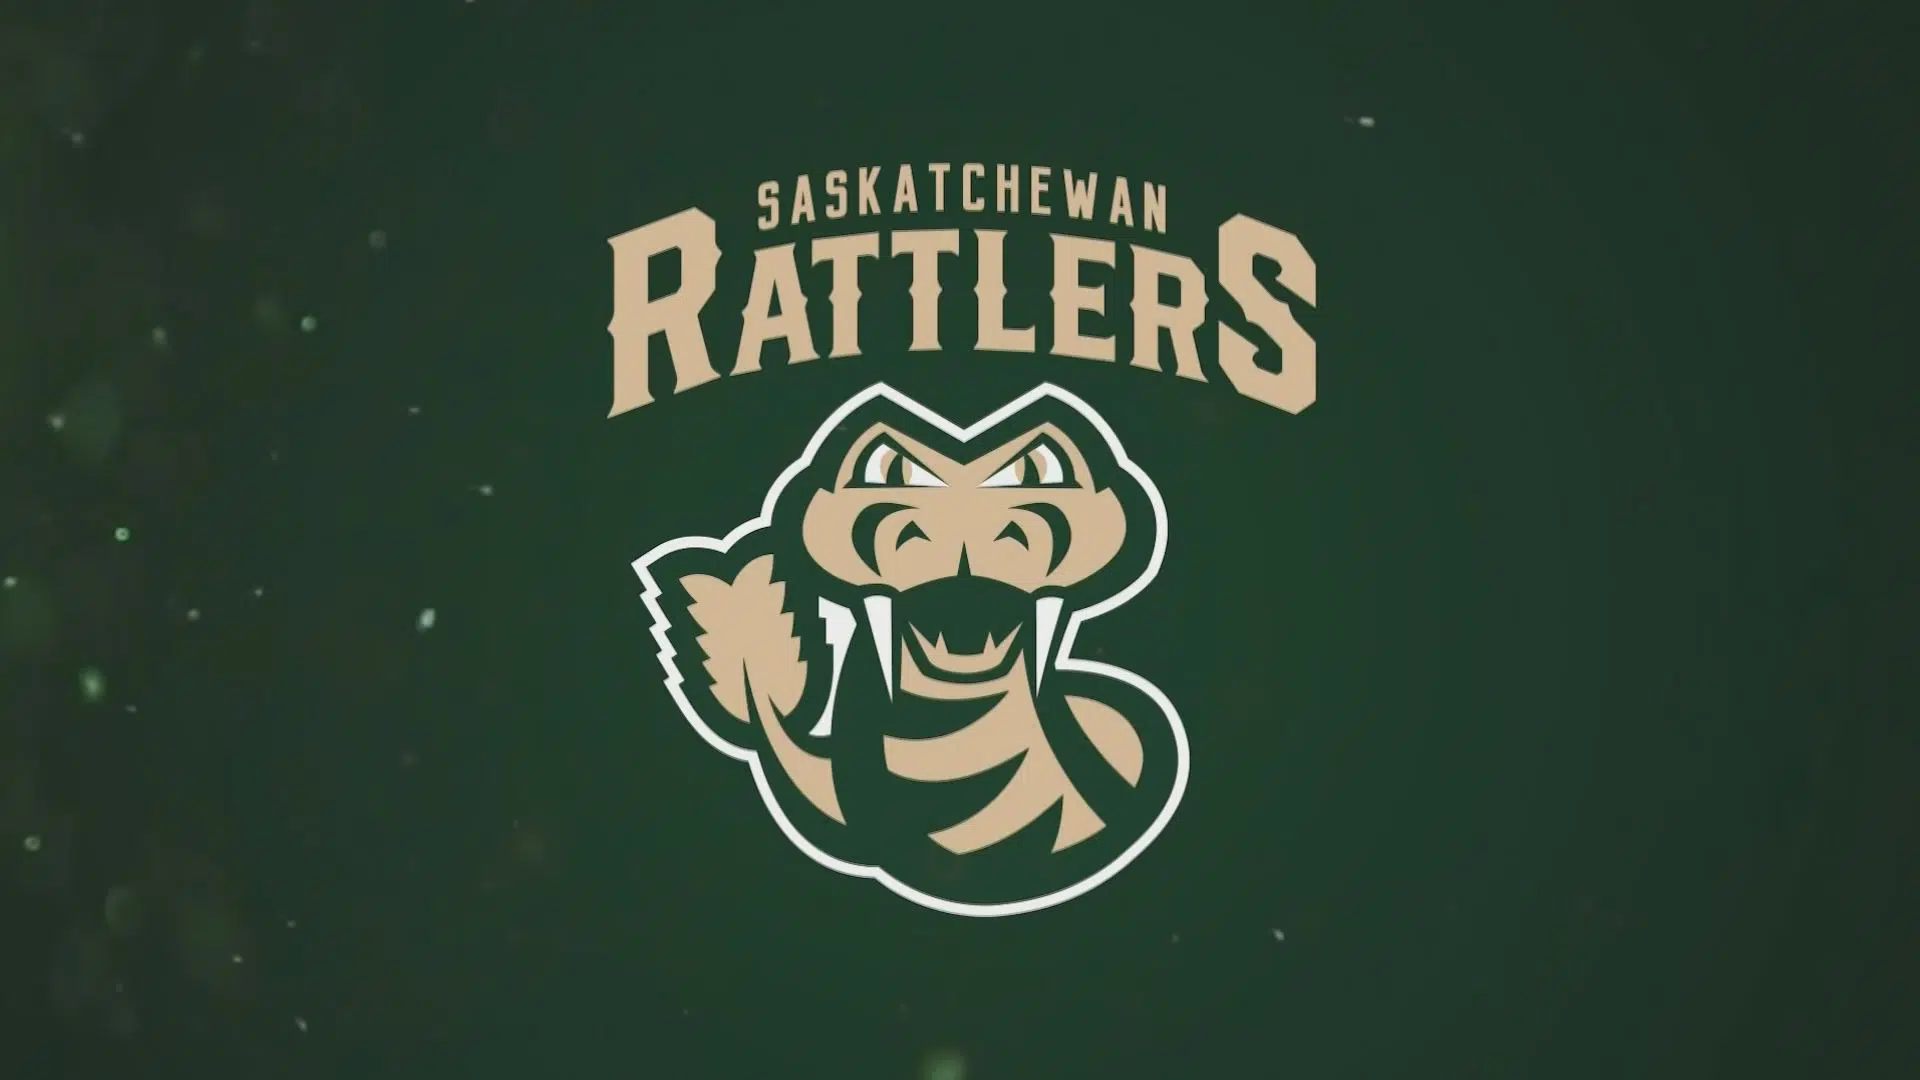 Saskatchewan Rattlers' CEBL schedule released